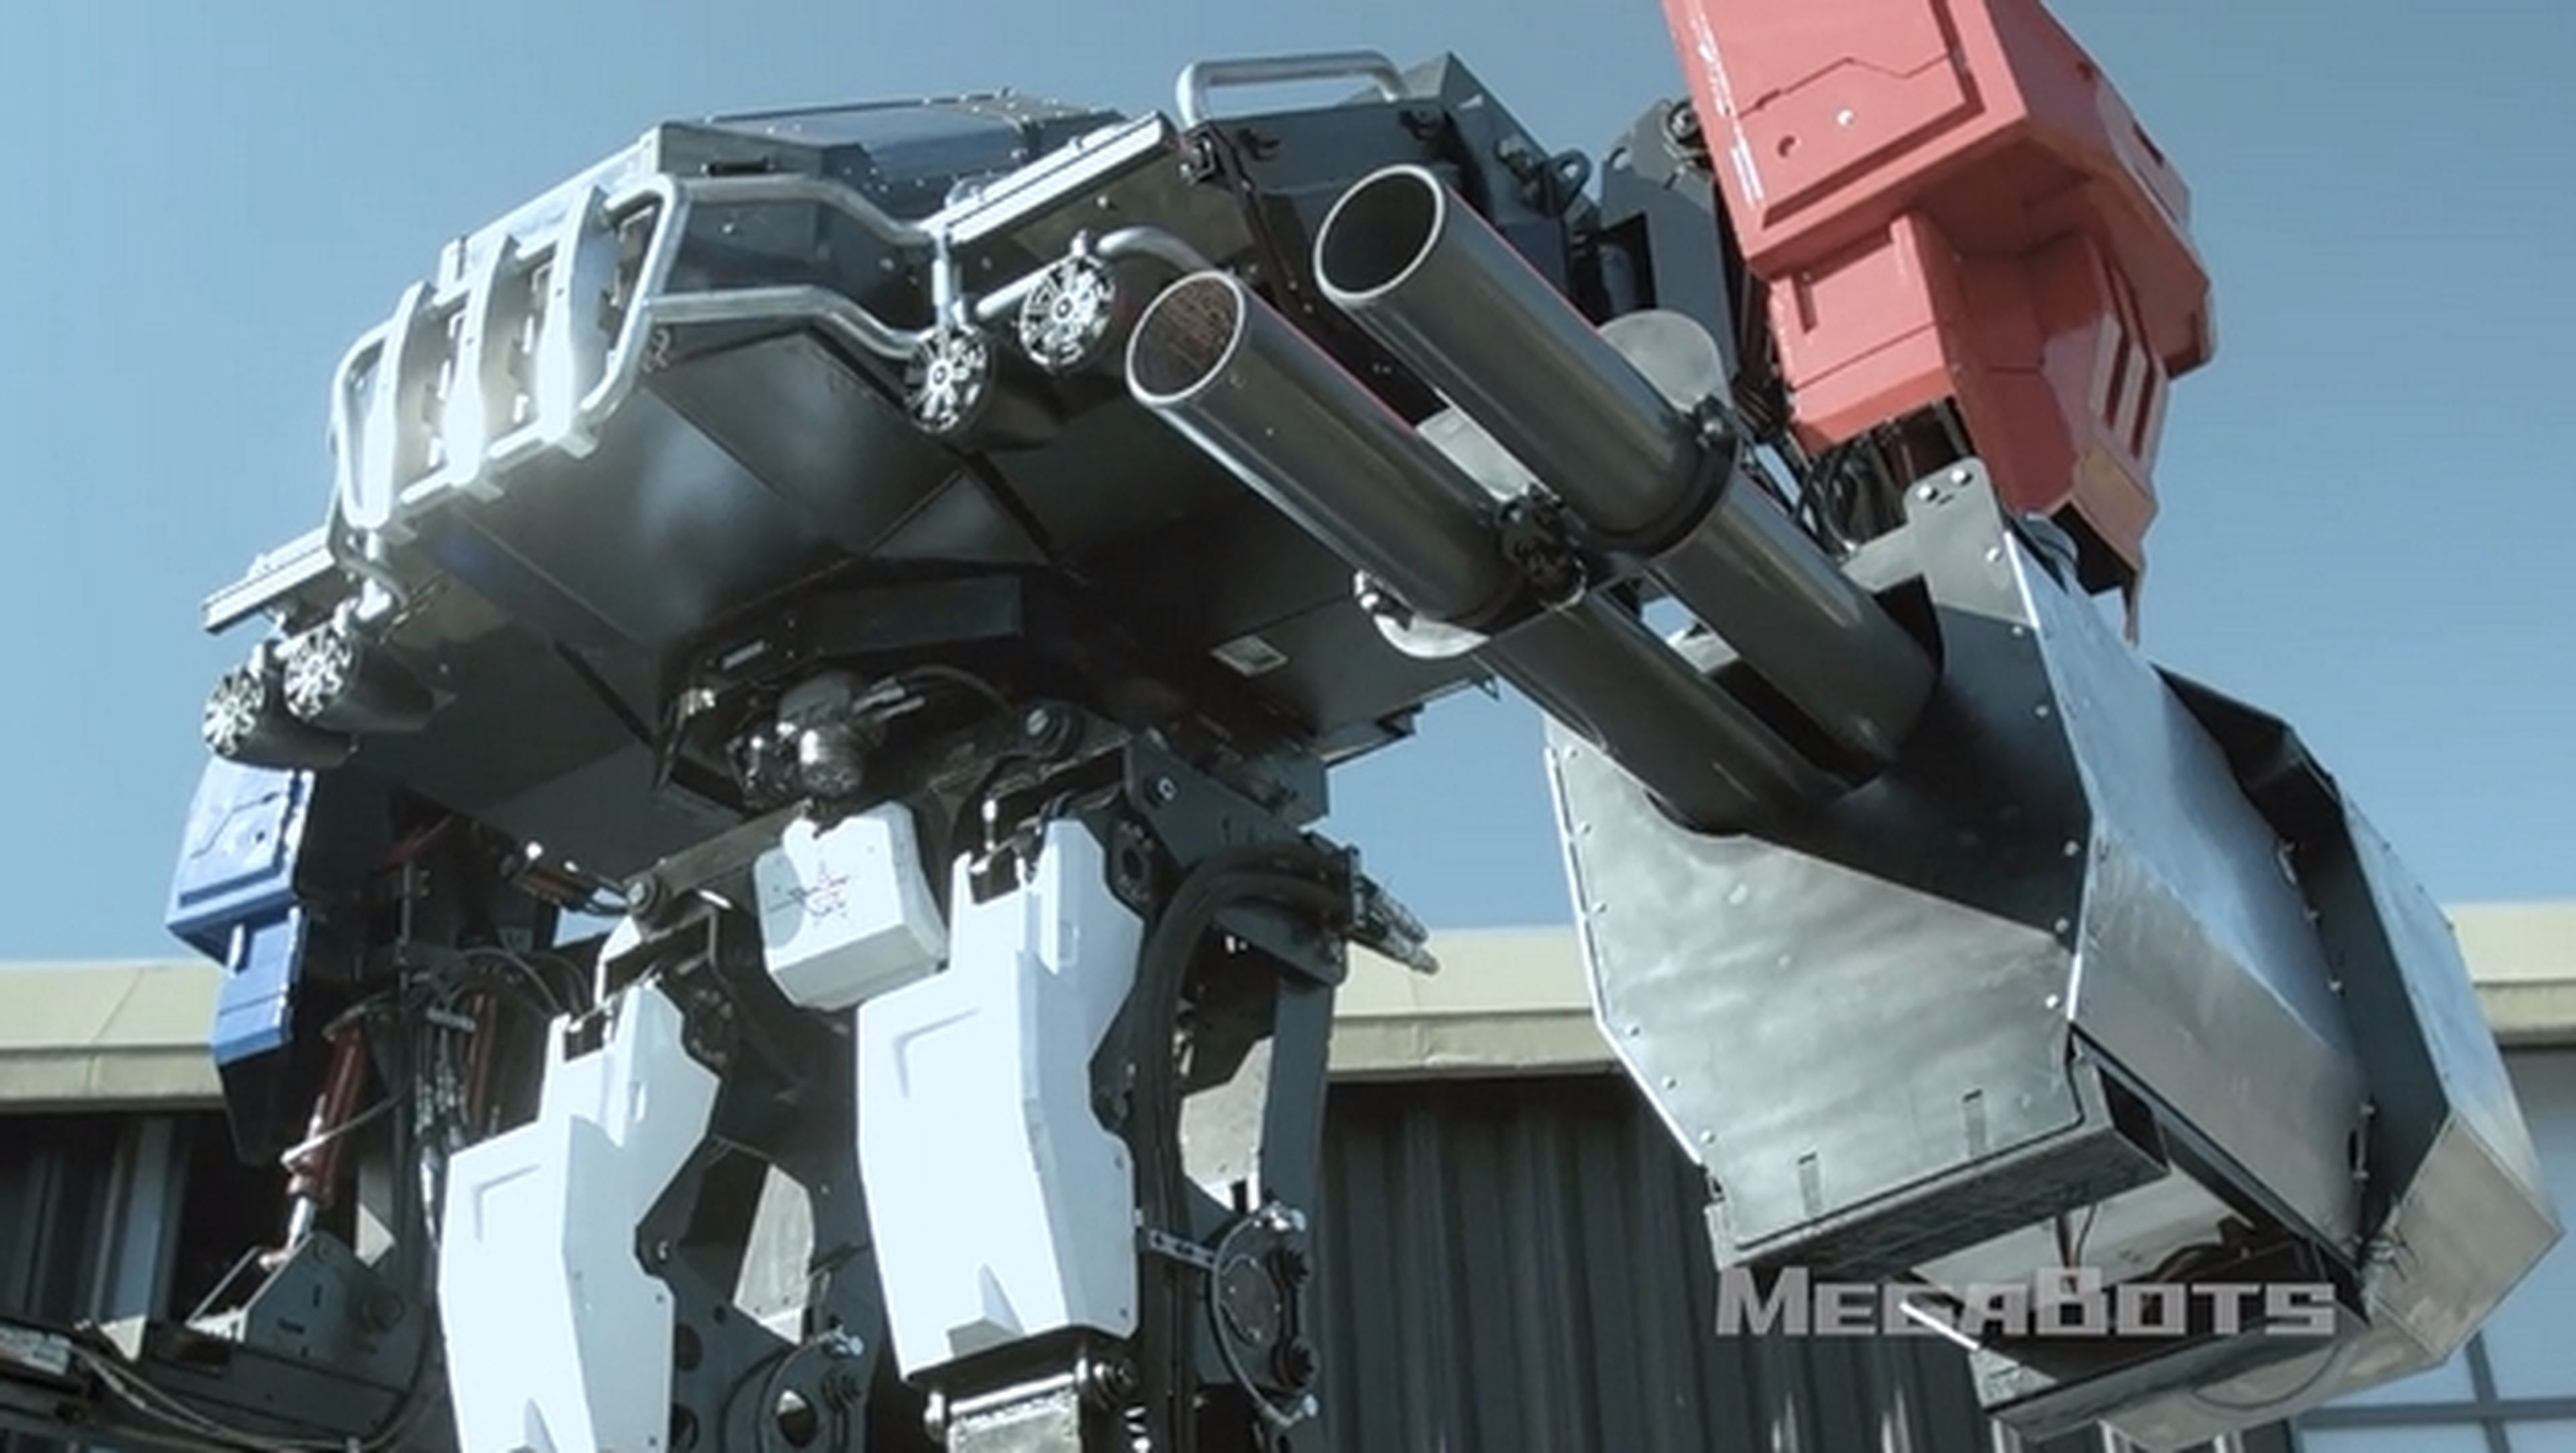 La Batalla de Robots Gigantes tripulados tendrá lugar el 17 de octubre